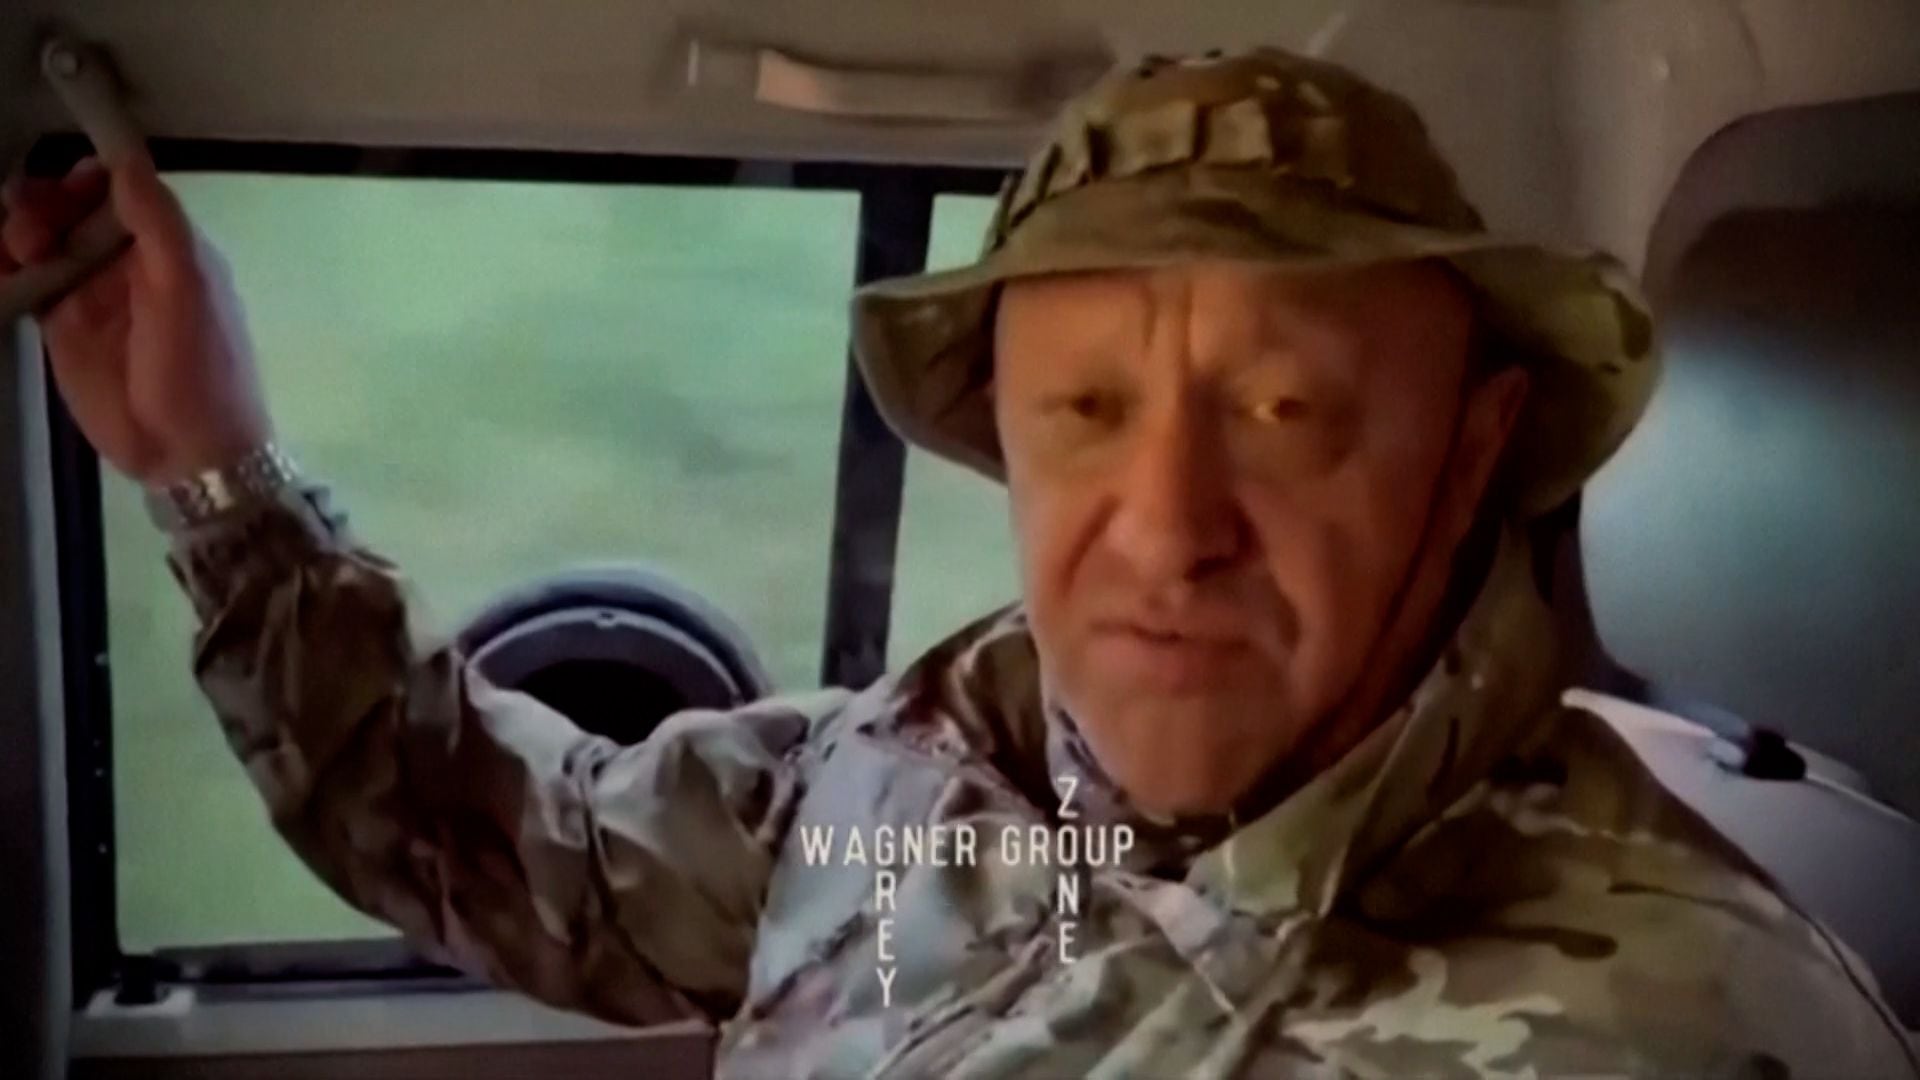 La vestimenta, el uniforme militar y el sombrero de Prigozhin, así como el reloj que lleva en la mano derecha, coinciden con su aspecto en un vídeo publicado por el grupo Wagner el 21 de agosto